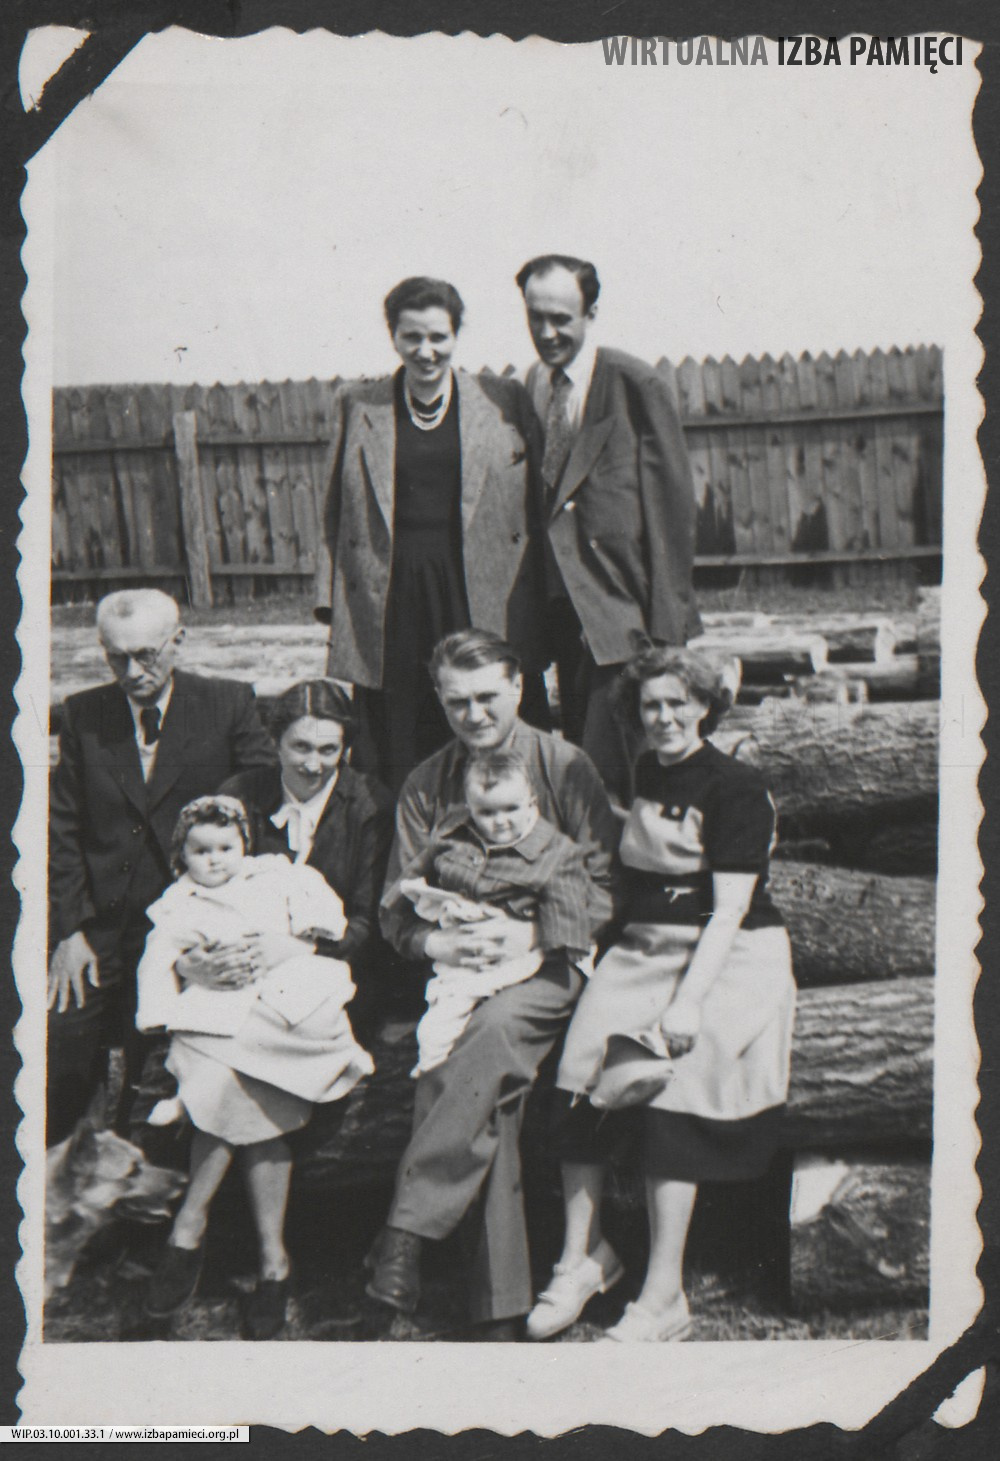 1950. Lubaczów. Pamiątkowe zdjęcie rodzinne. Od lewej: Maria Gutowska z córką Barbarą, Jan Rudeński z córką Elżbietą, Emilia Rudeńska, nad nimi stoi Wacława Ruebenbauer i Stanisław Ruebenbauer.